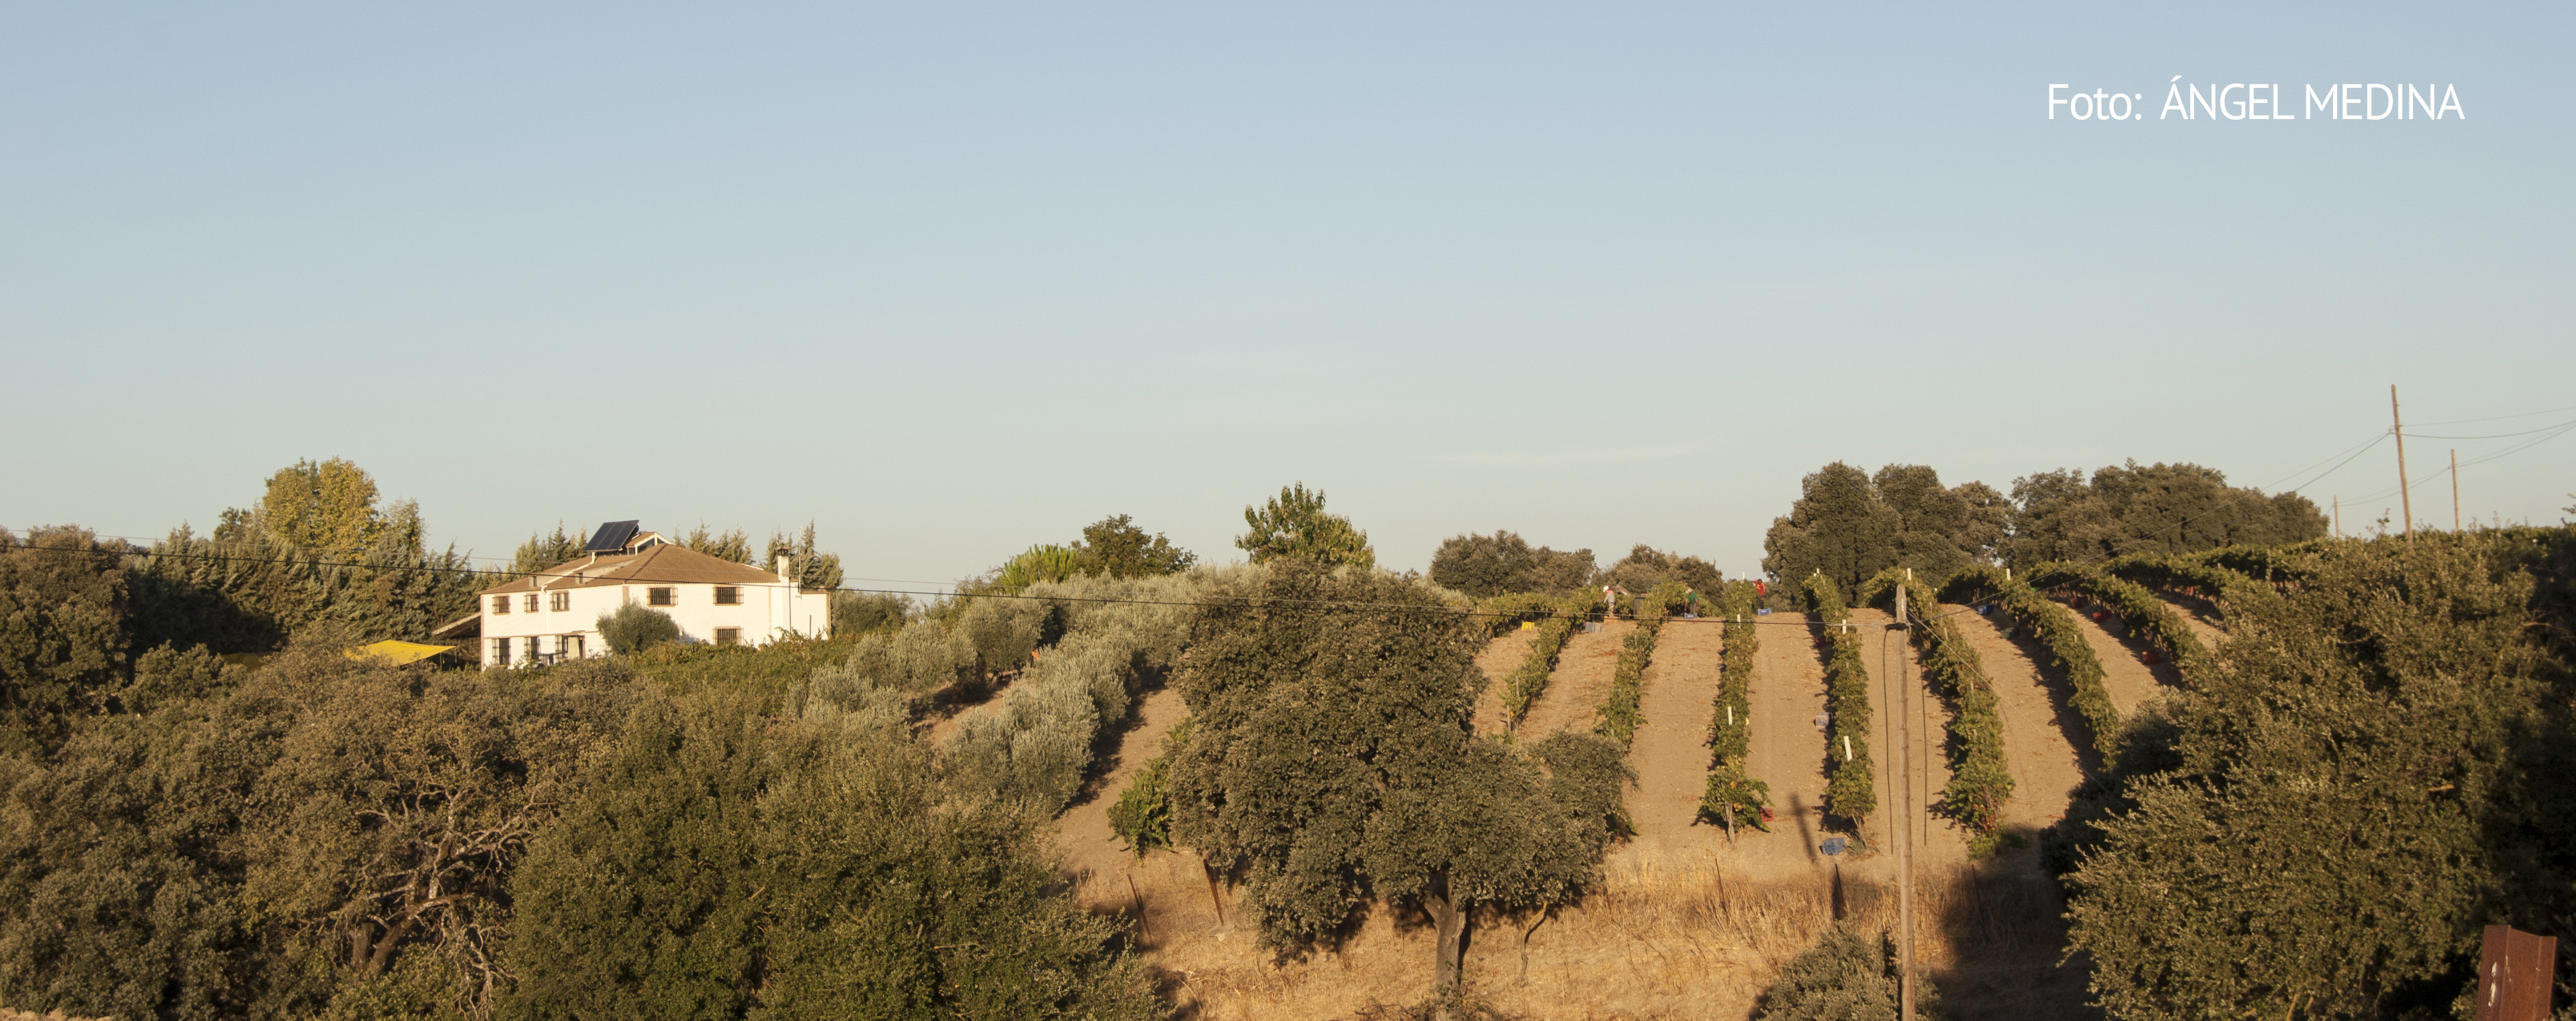 La finca Las Mesetas, propiedad de Paco Camacho, tiene una extensión de 60 hectáreas (50 de montes), de tradición ganadera y agrícola. En ese espacio, 1,3 hectáreas se dedica al viñedo. A la izquierda, una imagen del campo. Foto: ÁNGEL MEDINA.